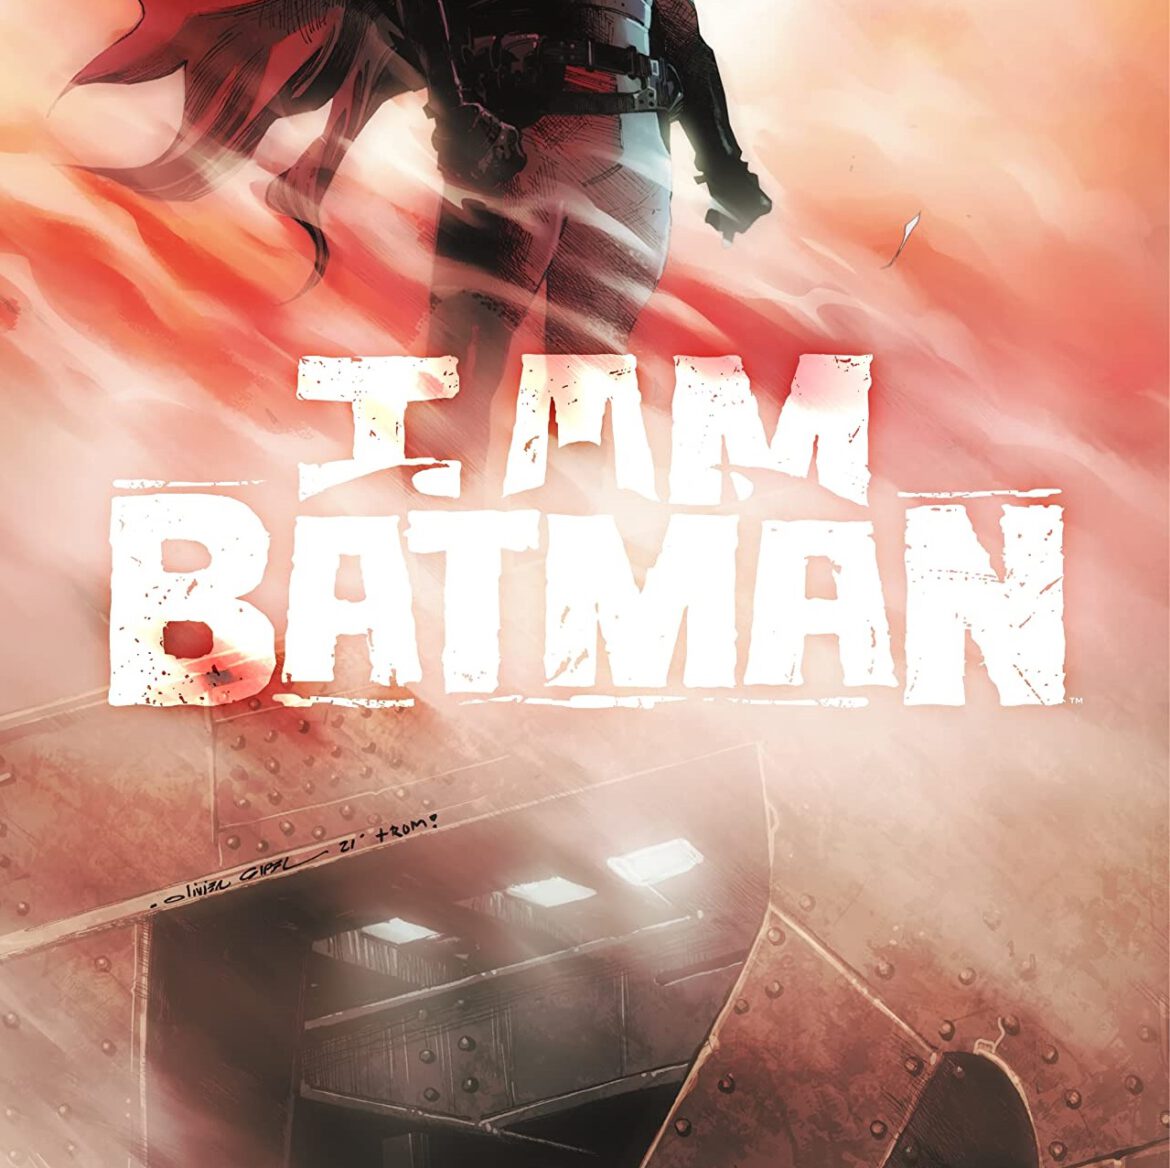 I Am Batman #1